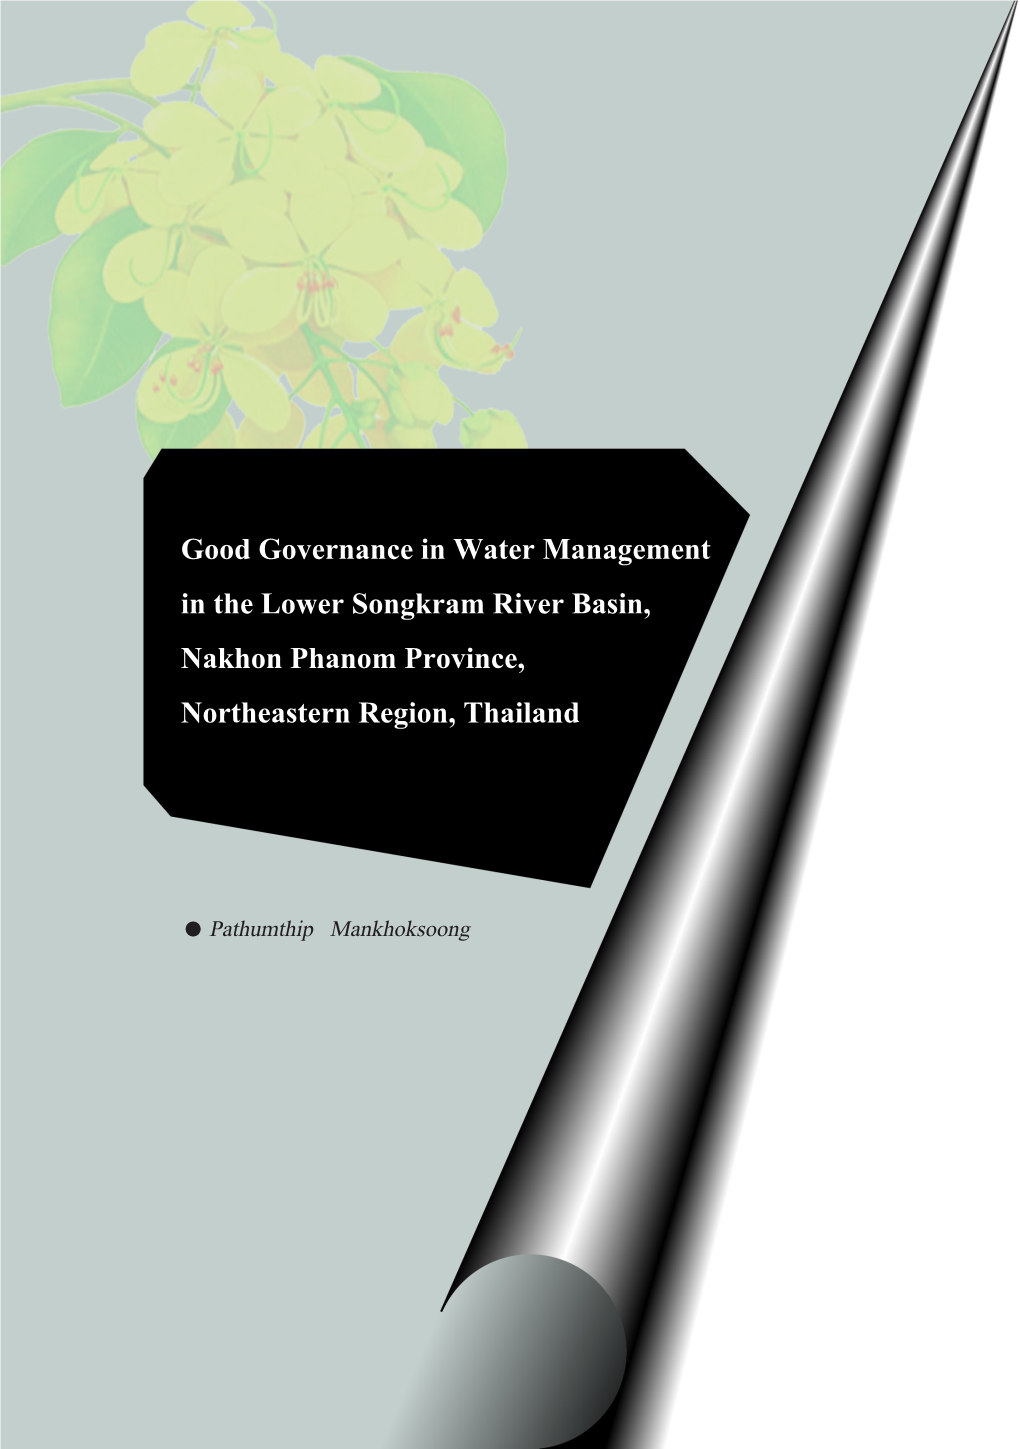 Good Governance in Water Management in the Lower Songkram River Basin, Nakhon Phanom Province, Northeastern Region, Thailand